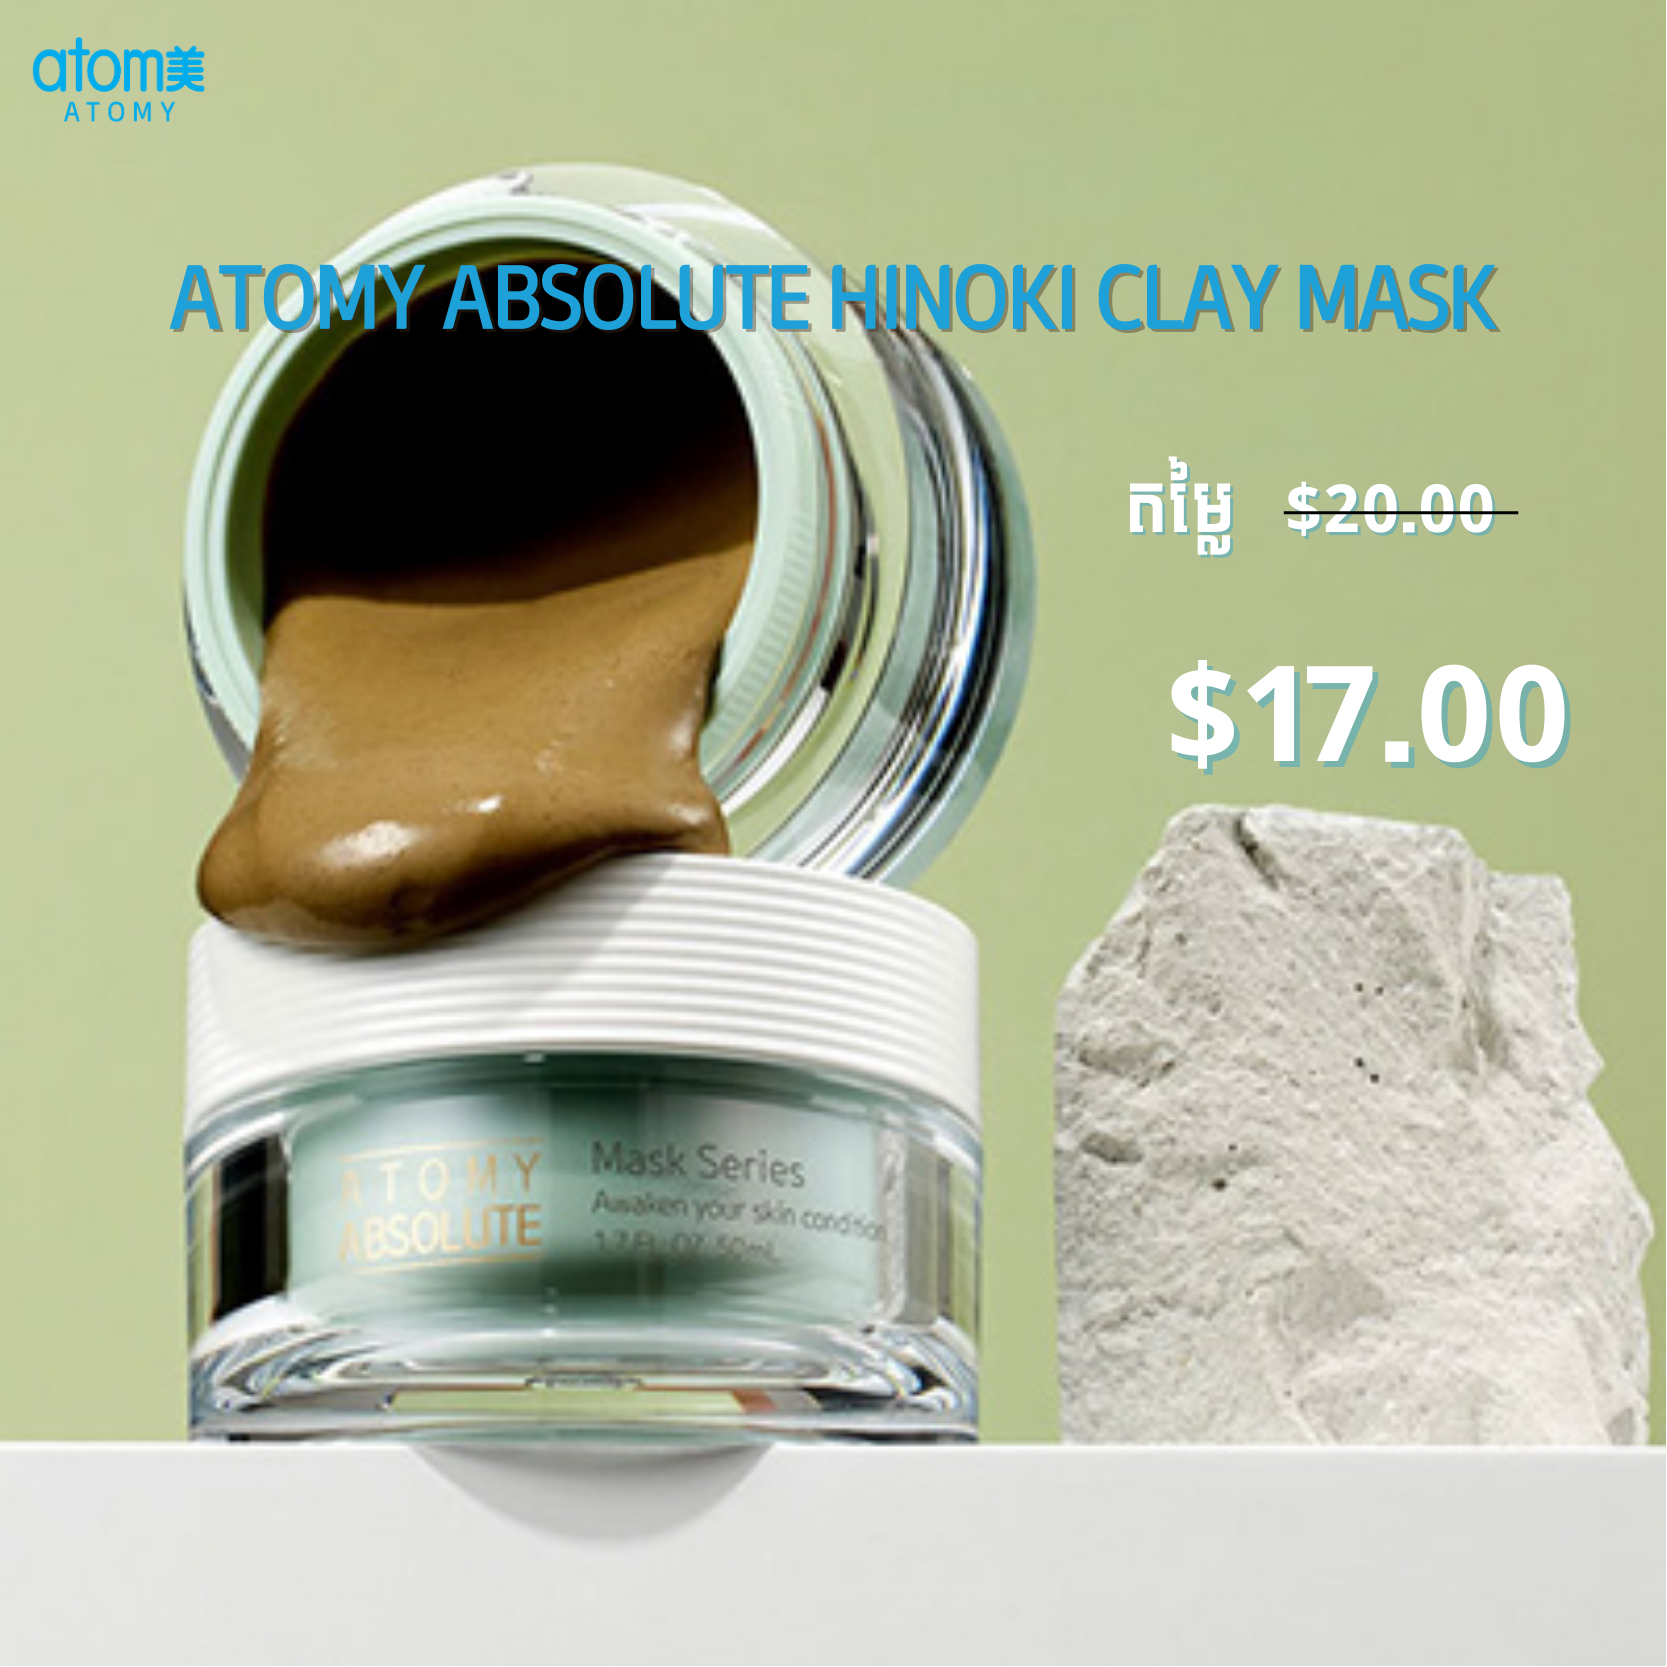 ម៉ាស់អាប់សូលូត ហ៊ីណូឃី ក្លេ/ Atomy Absolute Hinoki Clay Mask | Atomy Cambodia